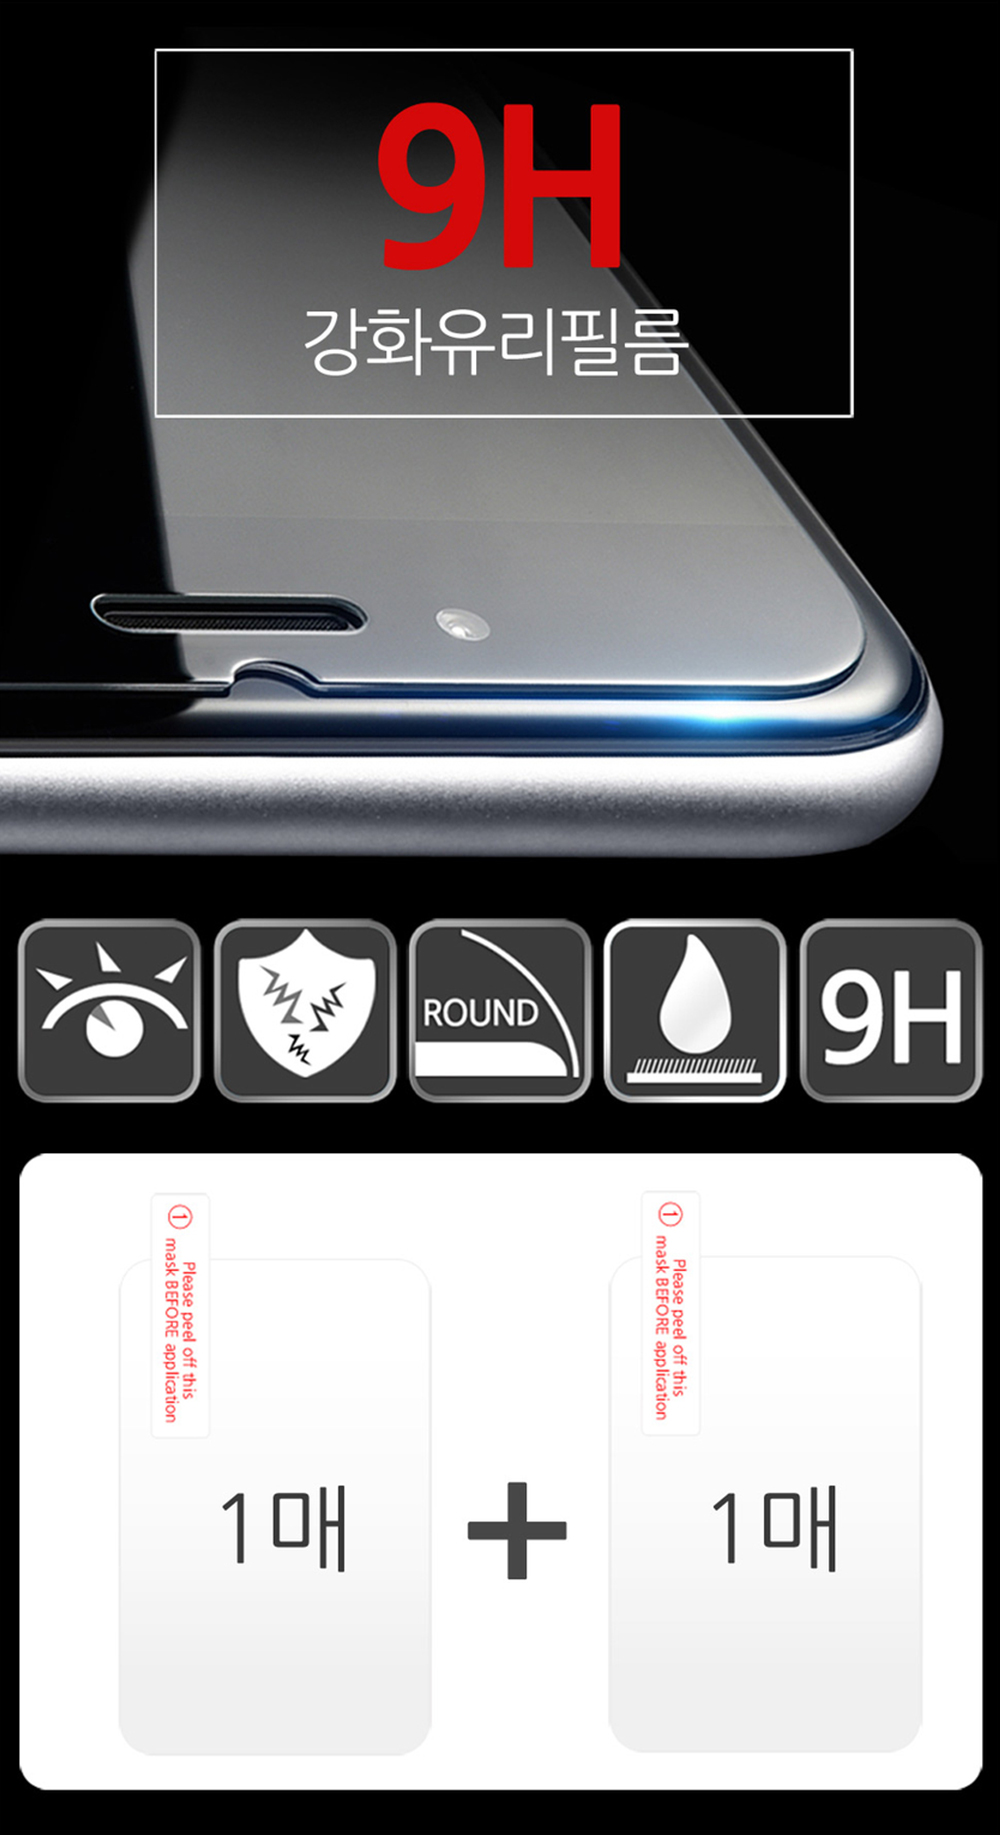 1+1 아이폰 SE2 (A2296) 일반 강화유리 액정 보호필름 13,800원 - 더조은셀러 디지털, 모바일 액세서리, 보호필름, 애플 바보사랑 1+1 아이폰 SE2 (A2296) 일반 강화유리 액정 보호필름 13,800원 - 더조은셀러 디지털, 모바일 액세서리, 보호필름, 애플 바보사랑